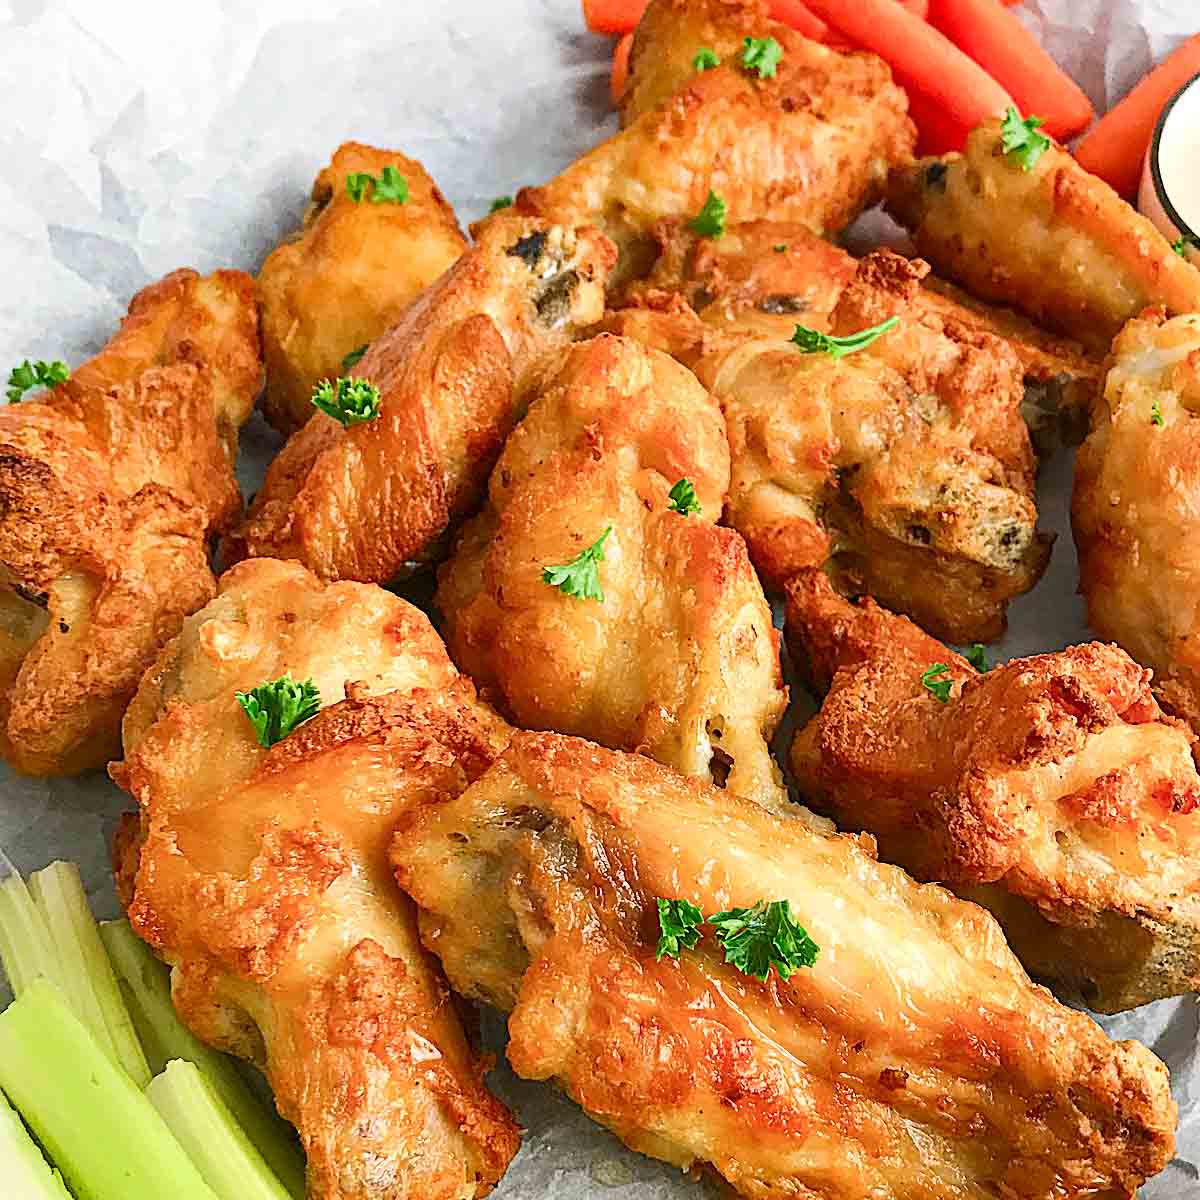 Frozen chicken wings in air fryer - Let’s Cook Chicken!